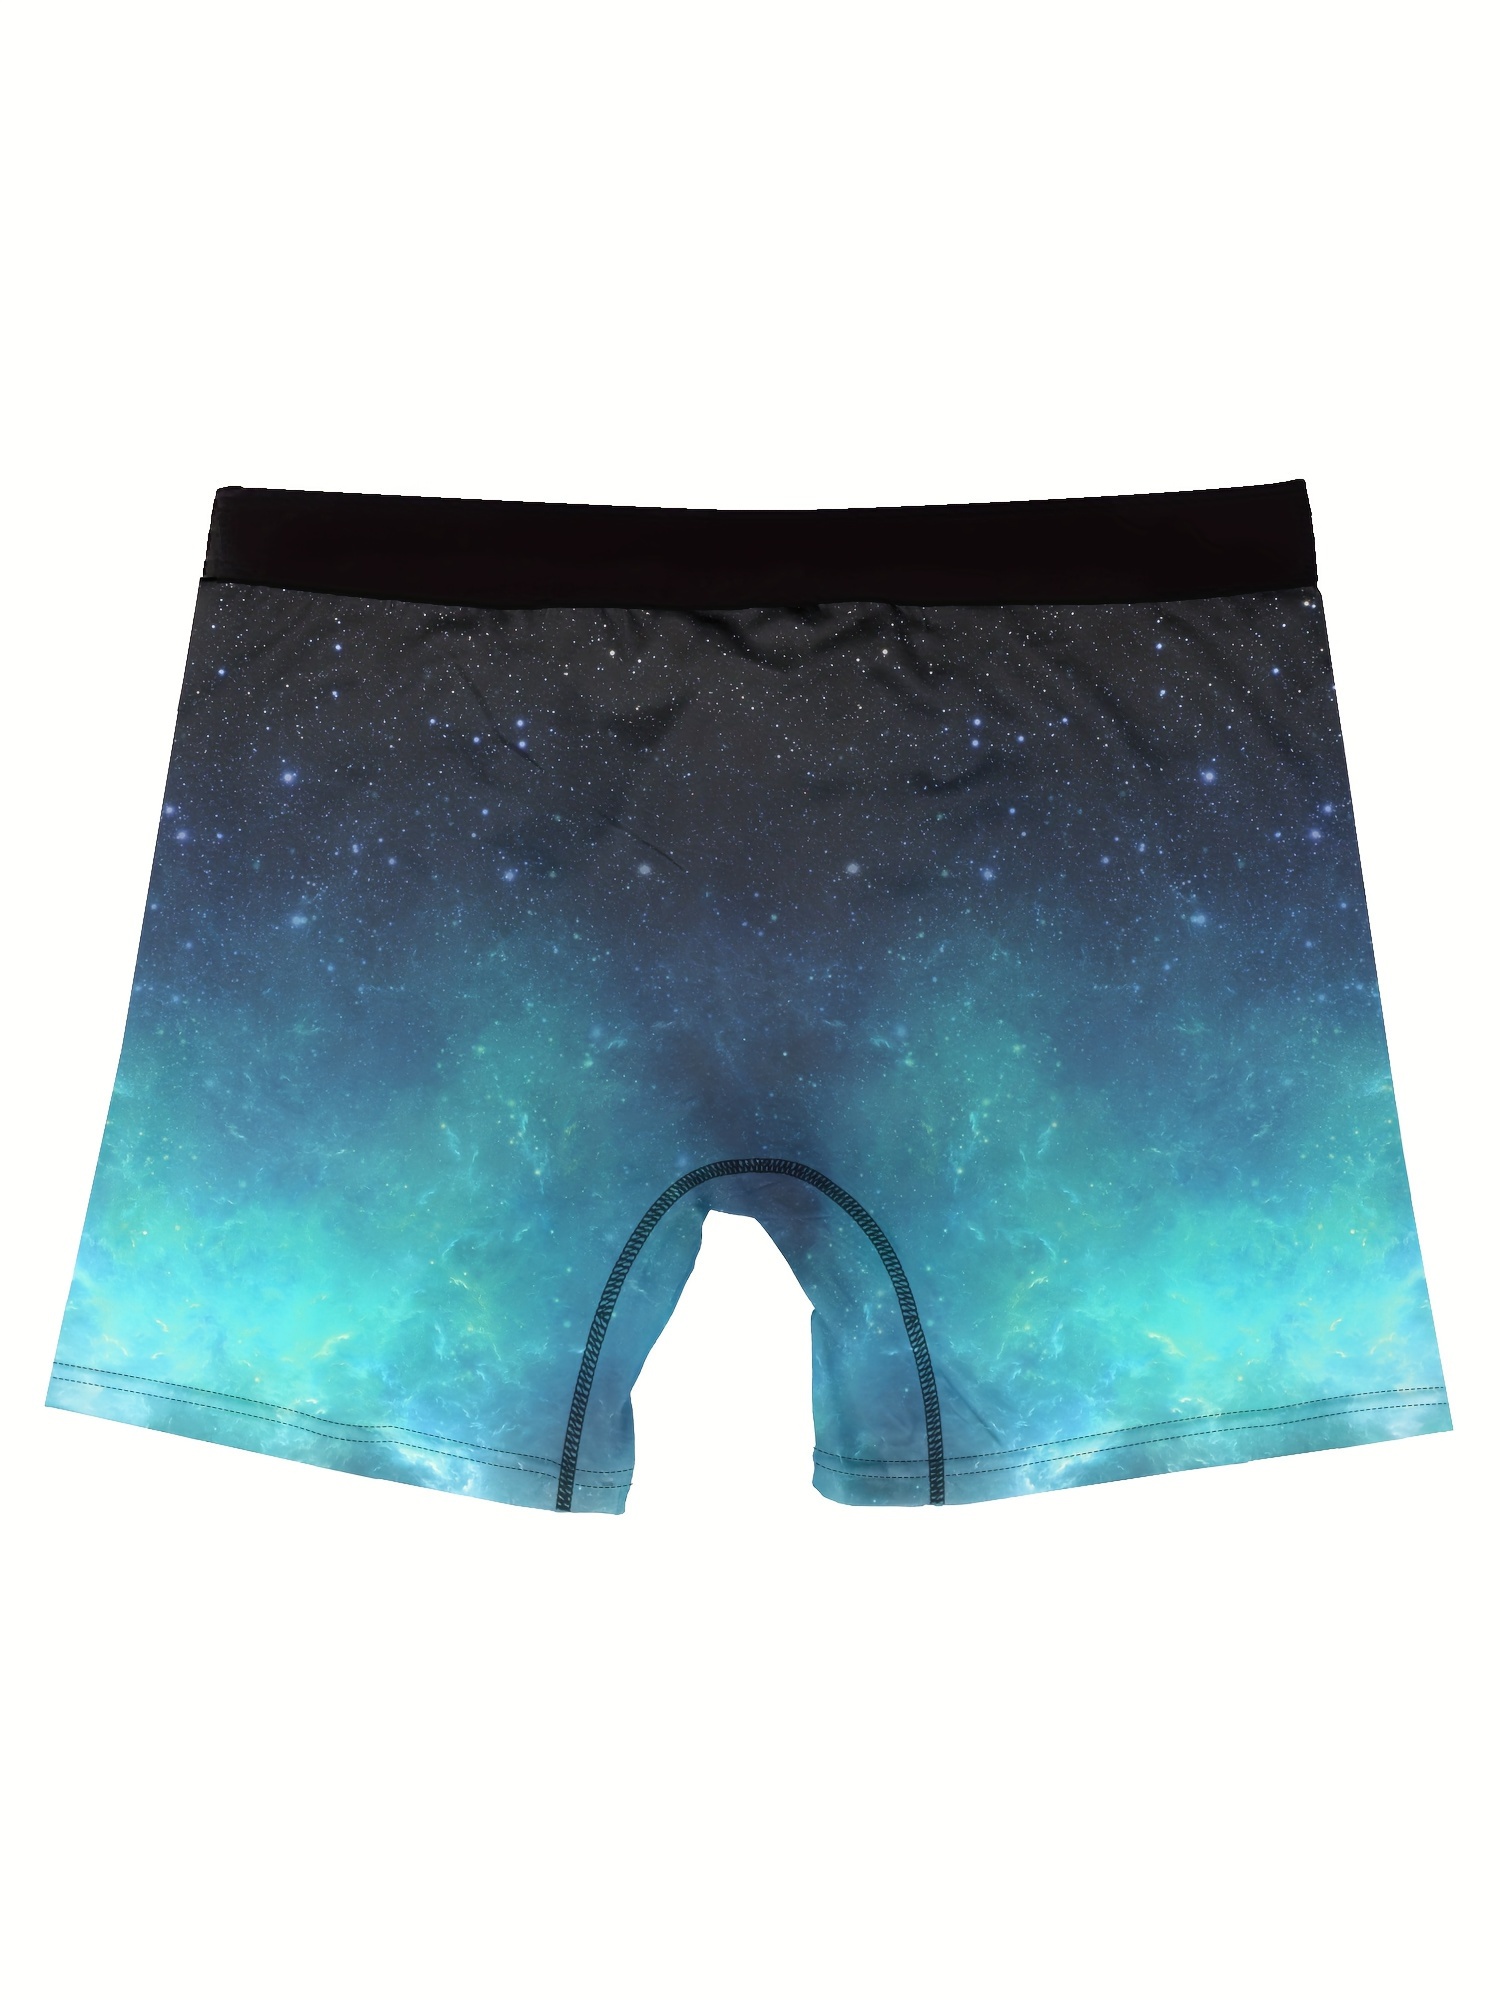 mens puppy starry sky pattern high stretch comfortable boxer briefs underwear details 2